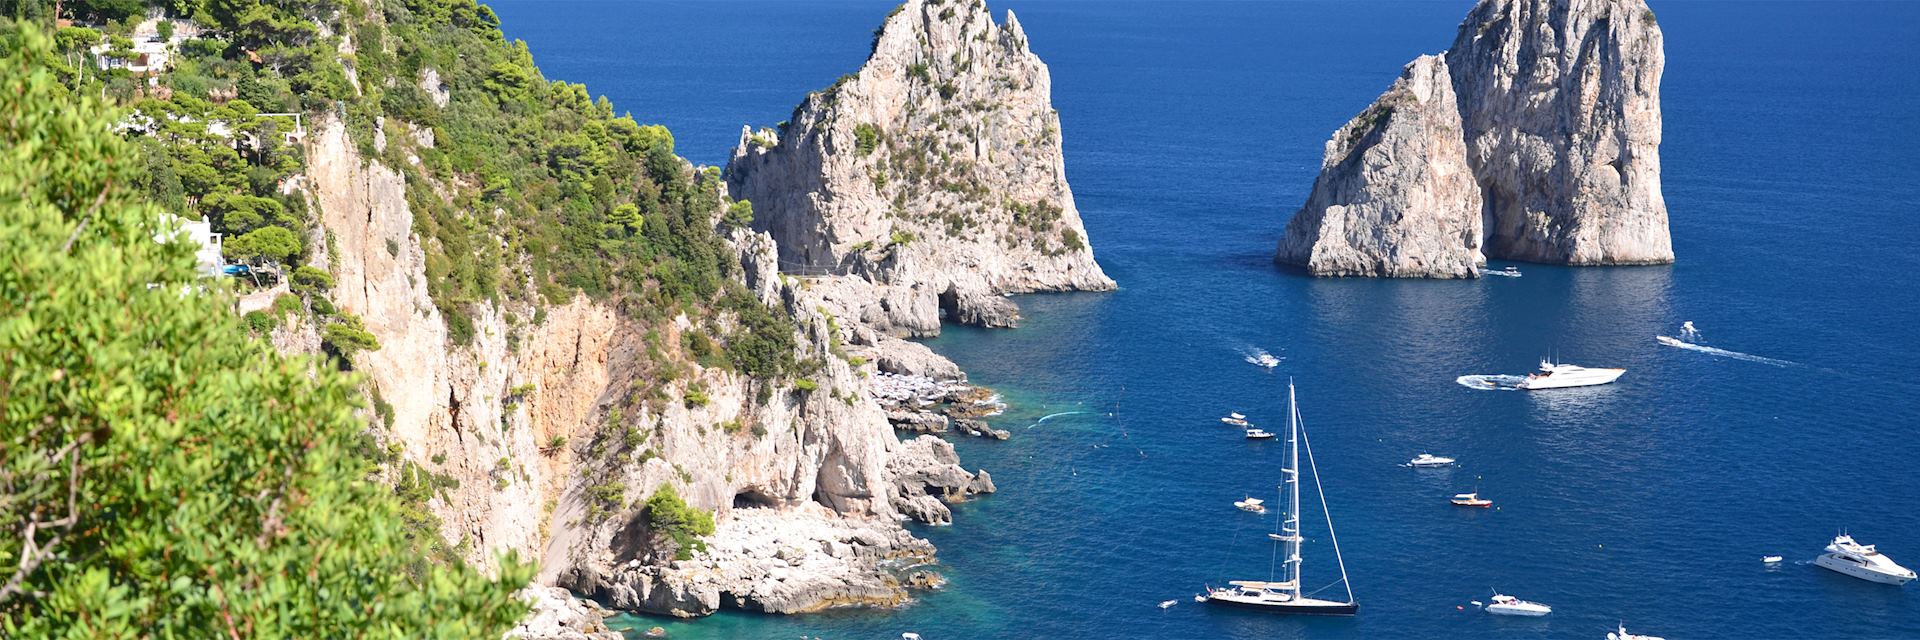 Capri coast, Italy